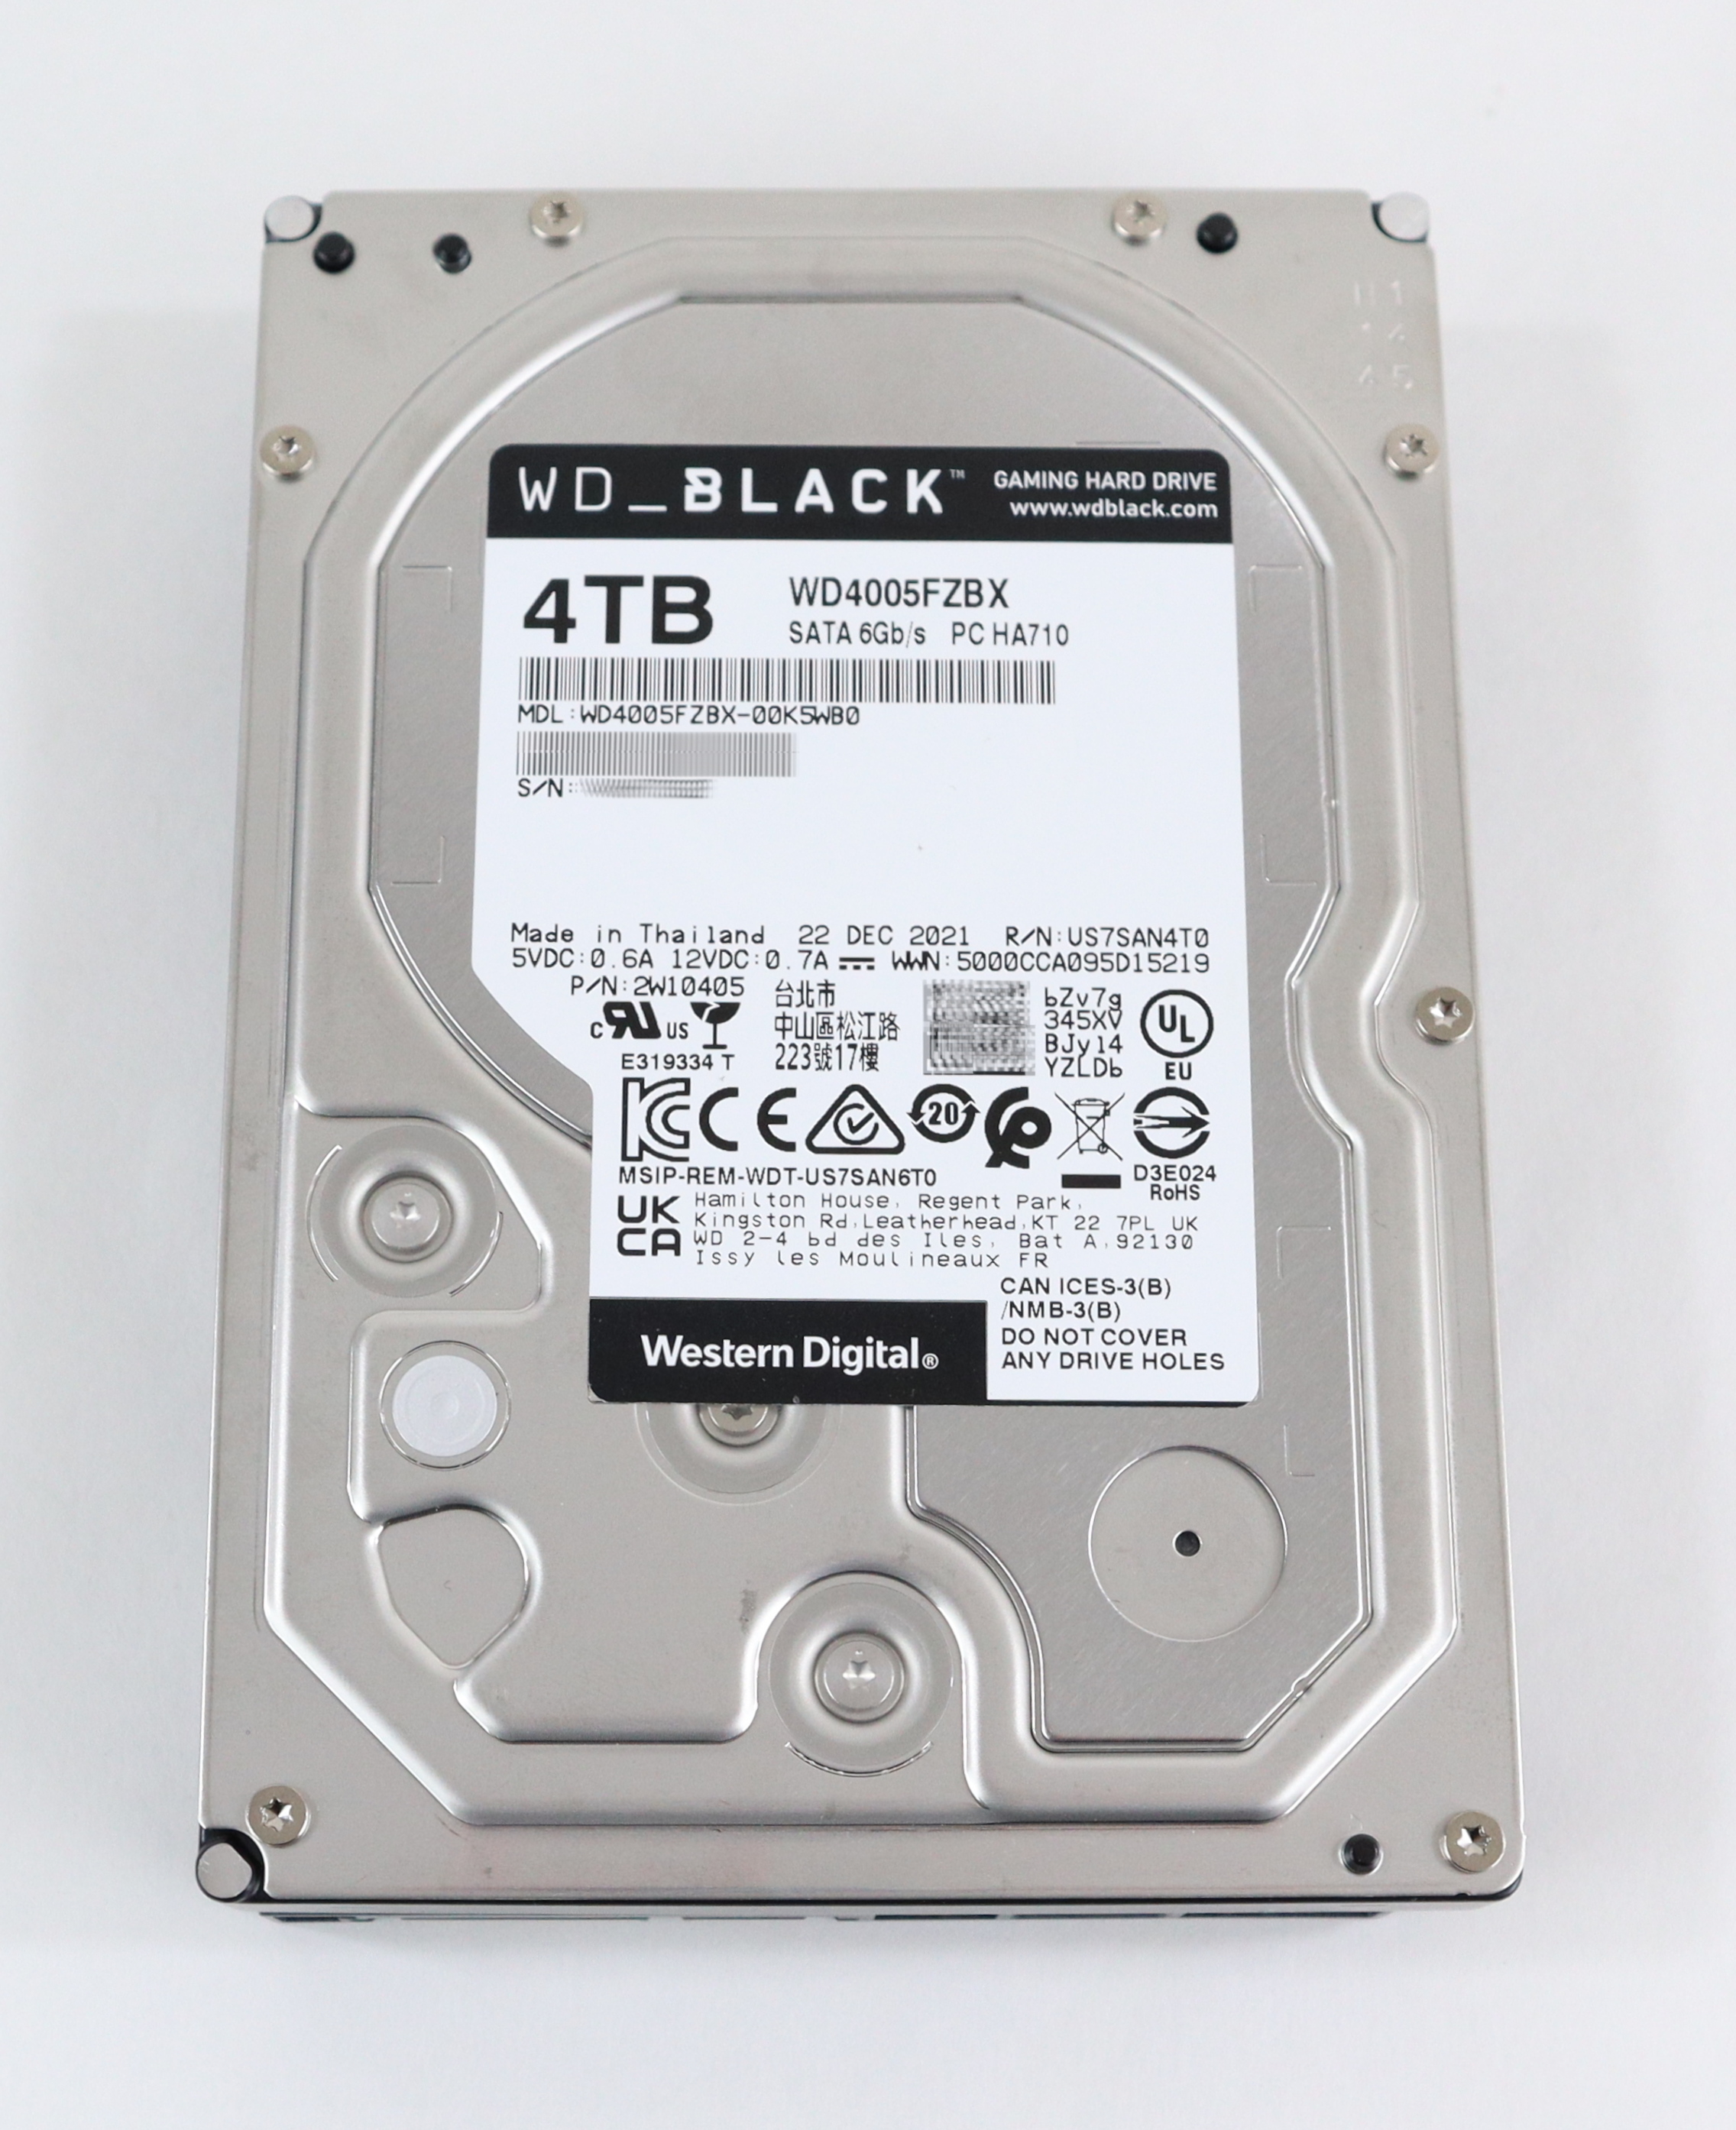 WD Black 4TB WD4005FZBX-00K5WB0 HA710 7.2K RPM SATA 6Gb/s 3.5" 2W10405